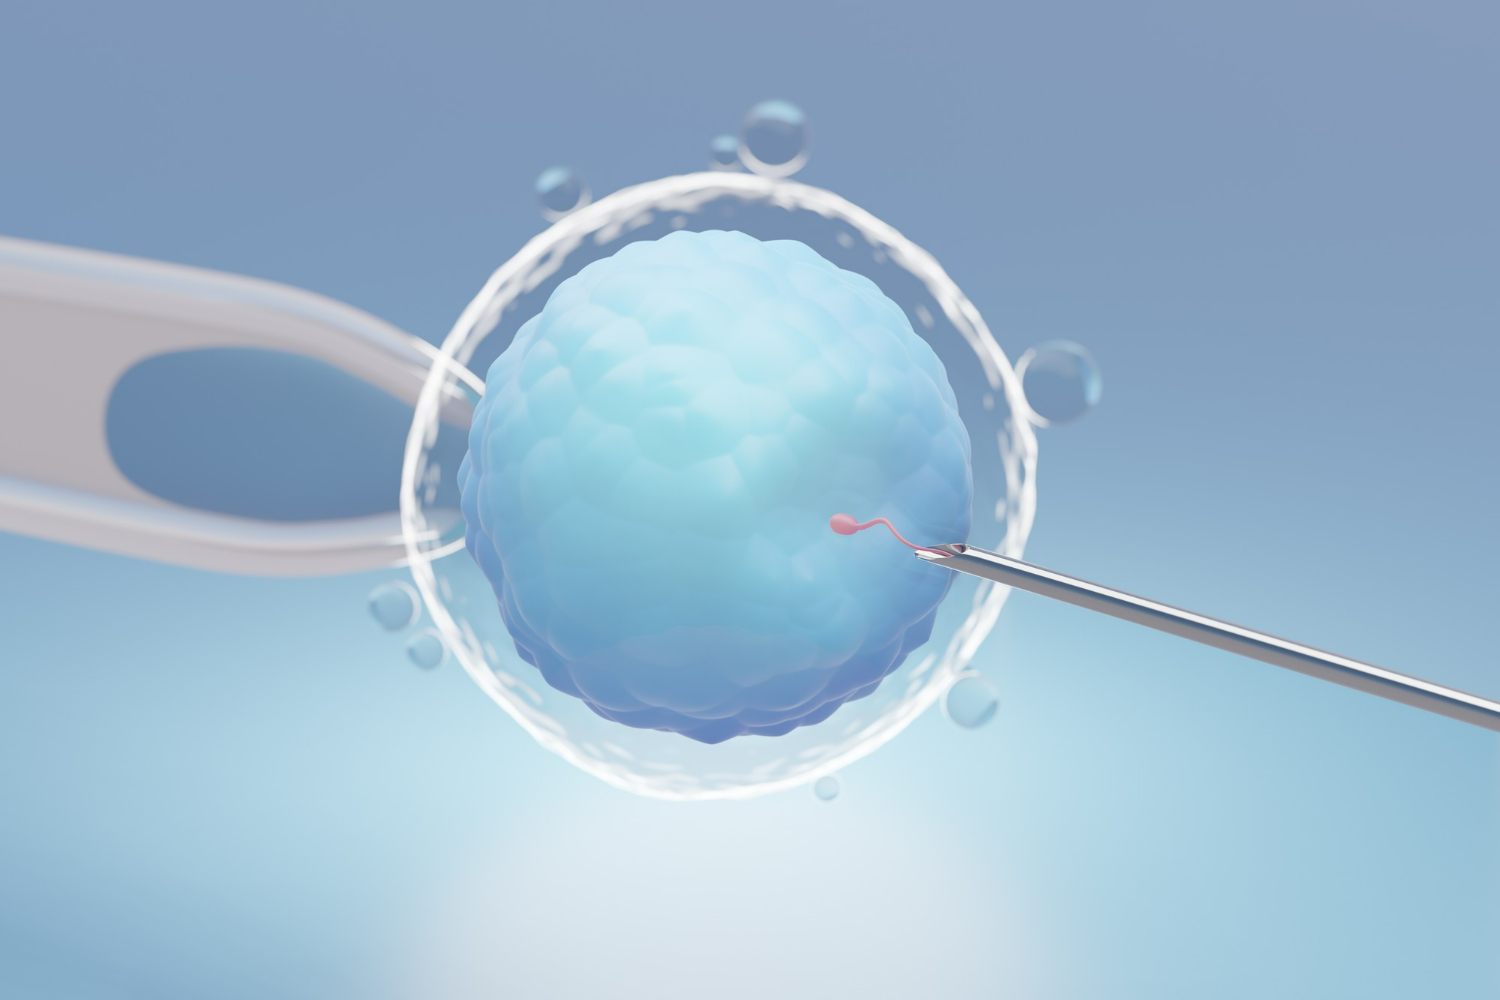 intra cytoplasmic sperm injection treatment